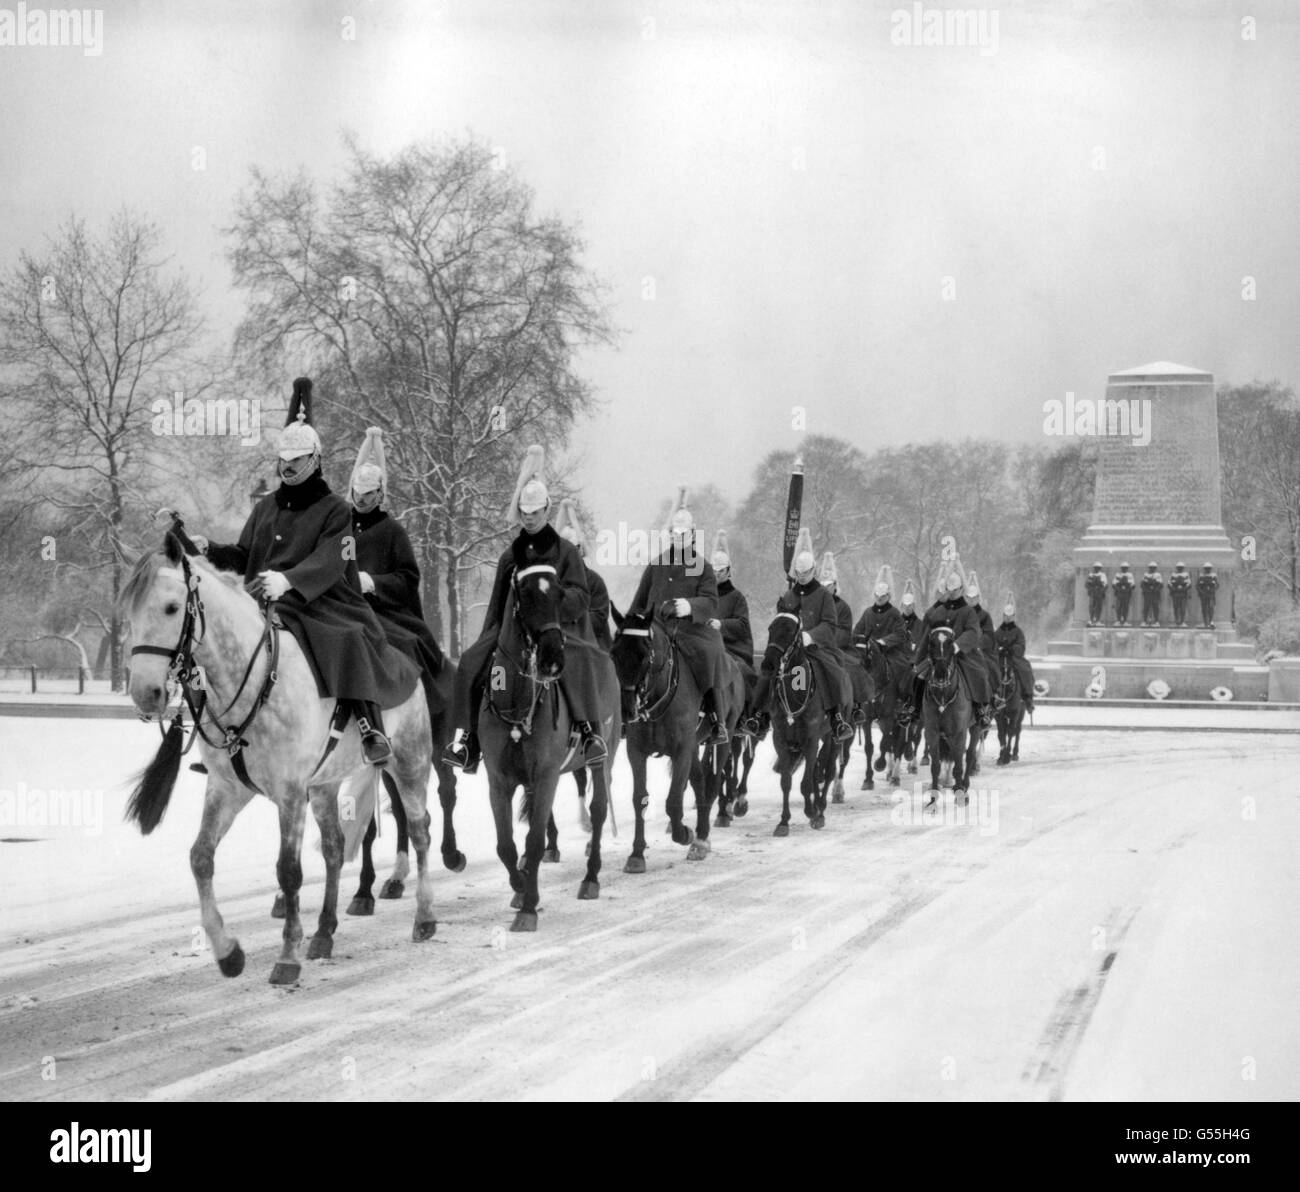 La cavalerie de la maison se met en route pour la cérémonie de relève de la garde à travers la neige sur la parade des gardes à cheval, Londres Banque D'Images